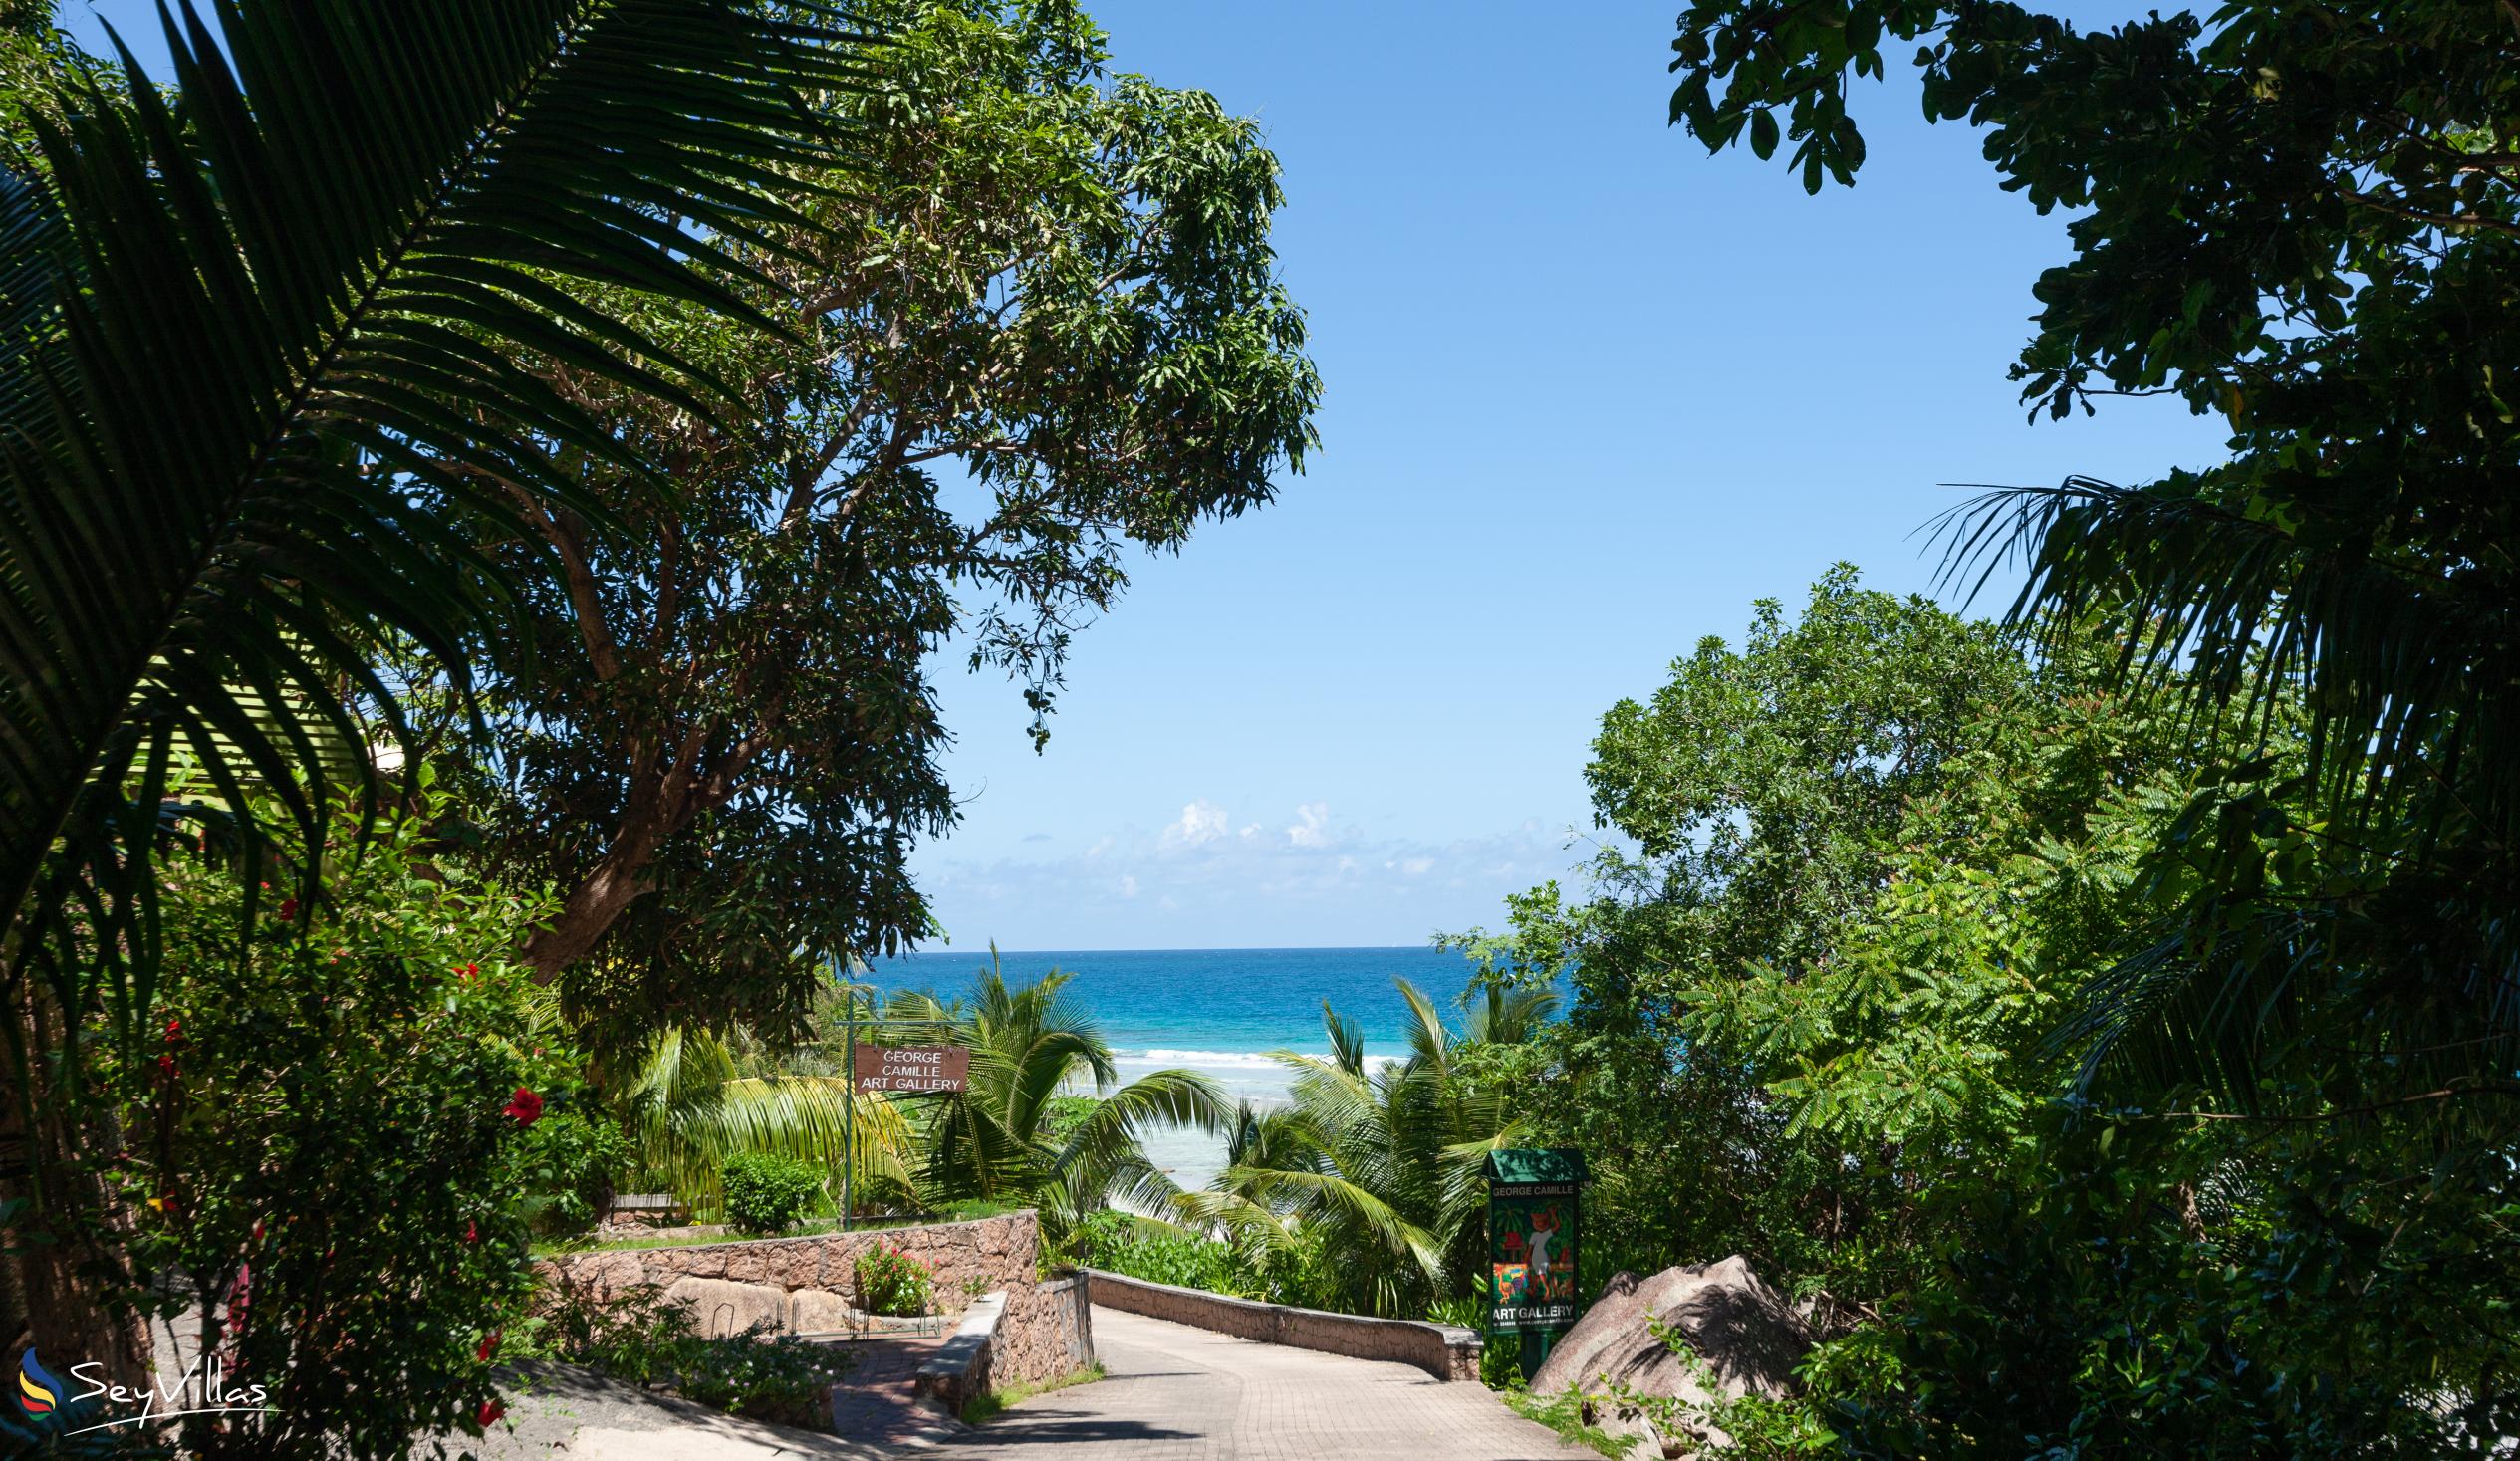 Foto 20: Anse Grosse Roche Beach Villa - Posizione - La Digue (Seychelles)